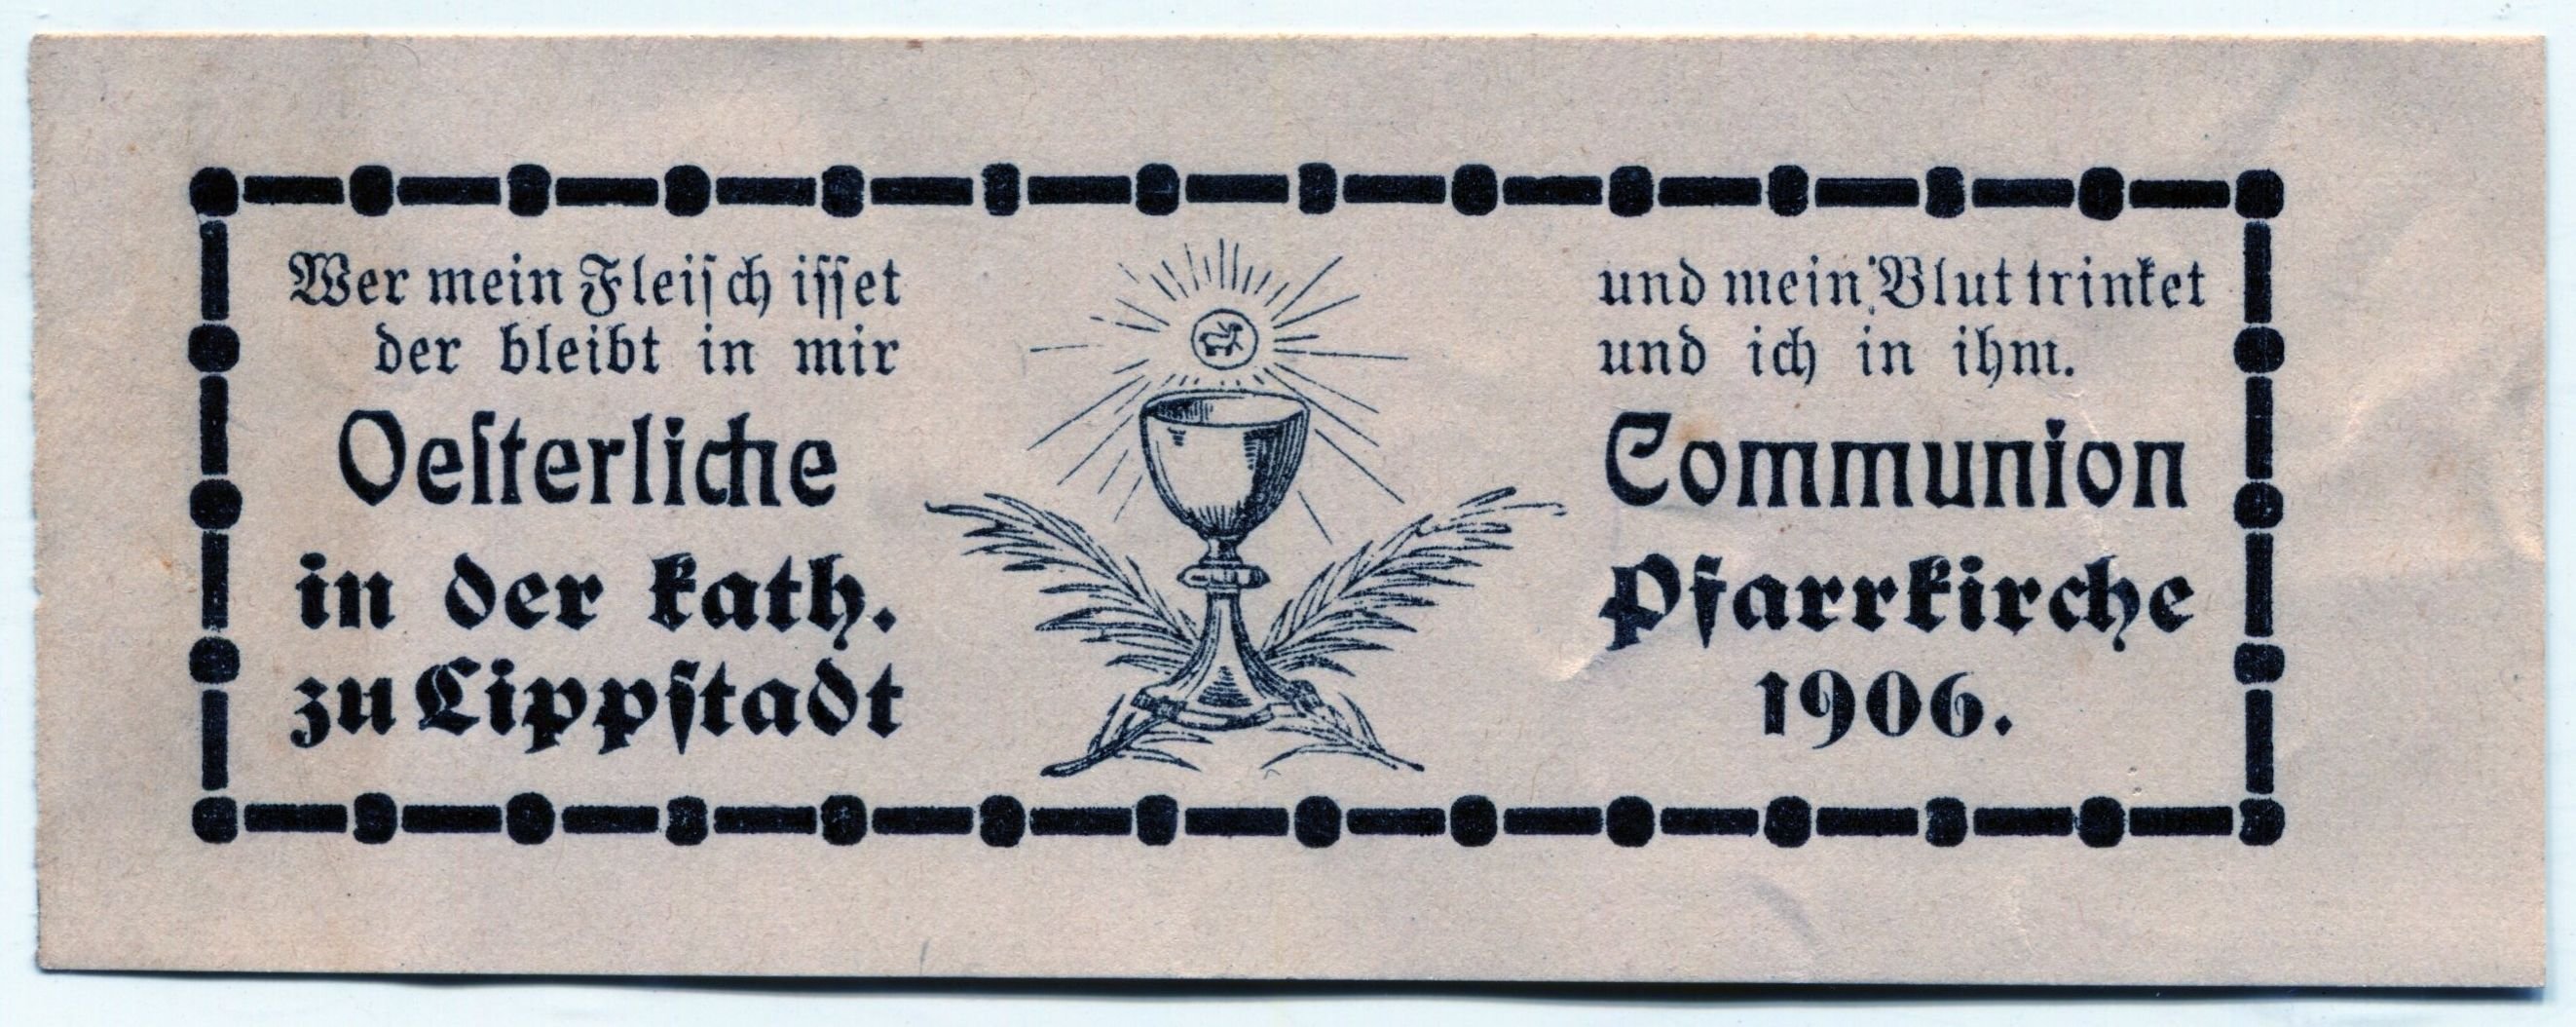 Osterkommunion Lippstadt 1906 (Stadtmuseum Lippstadt RR-F)